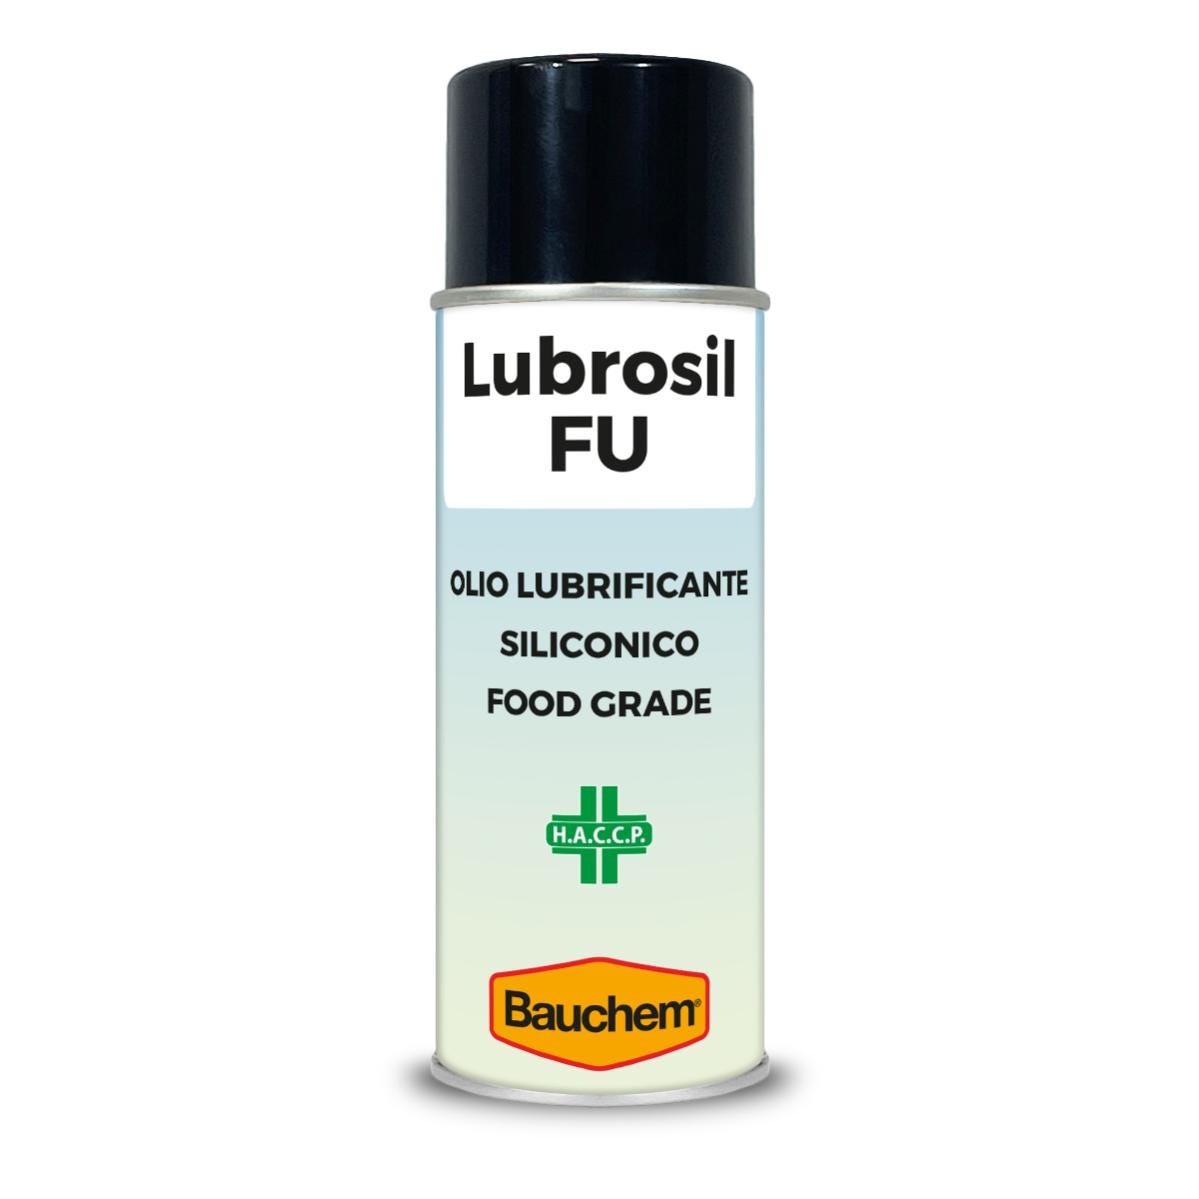 BAUCHEM Lubrosil FU Olio Lubrificante Siliconico per Settore Alimentare  Spray 400 ml